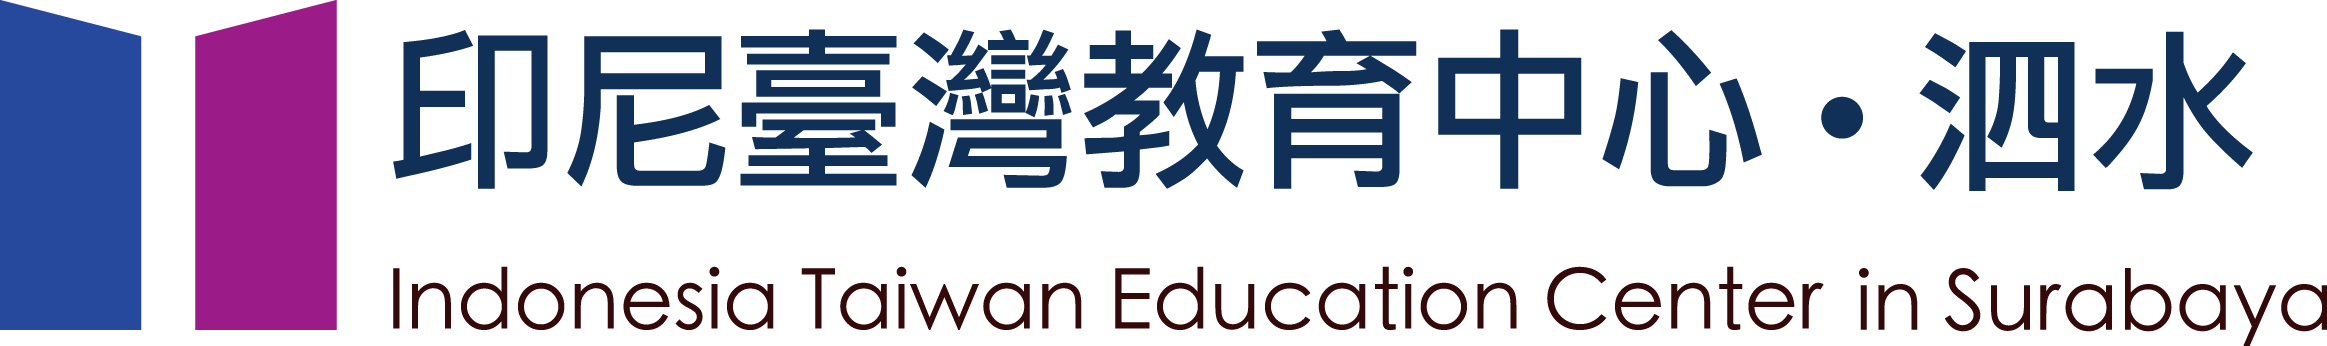 印尼臺灣教育中心-泗水的Logo